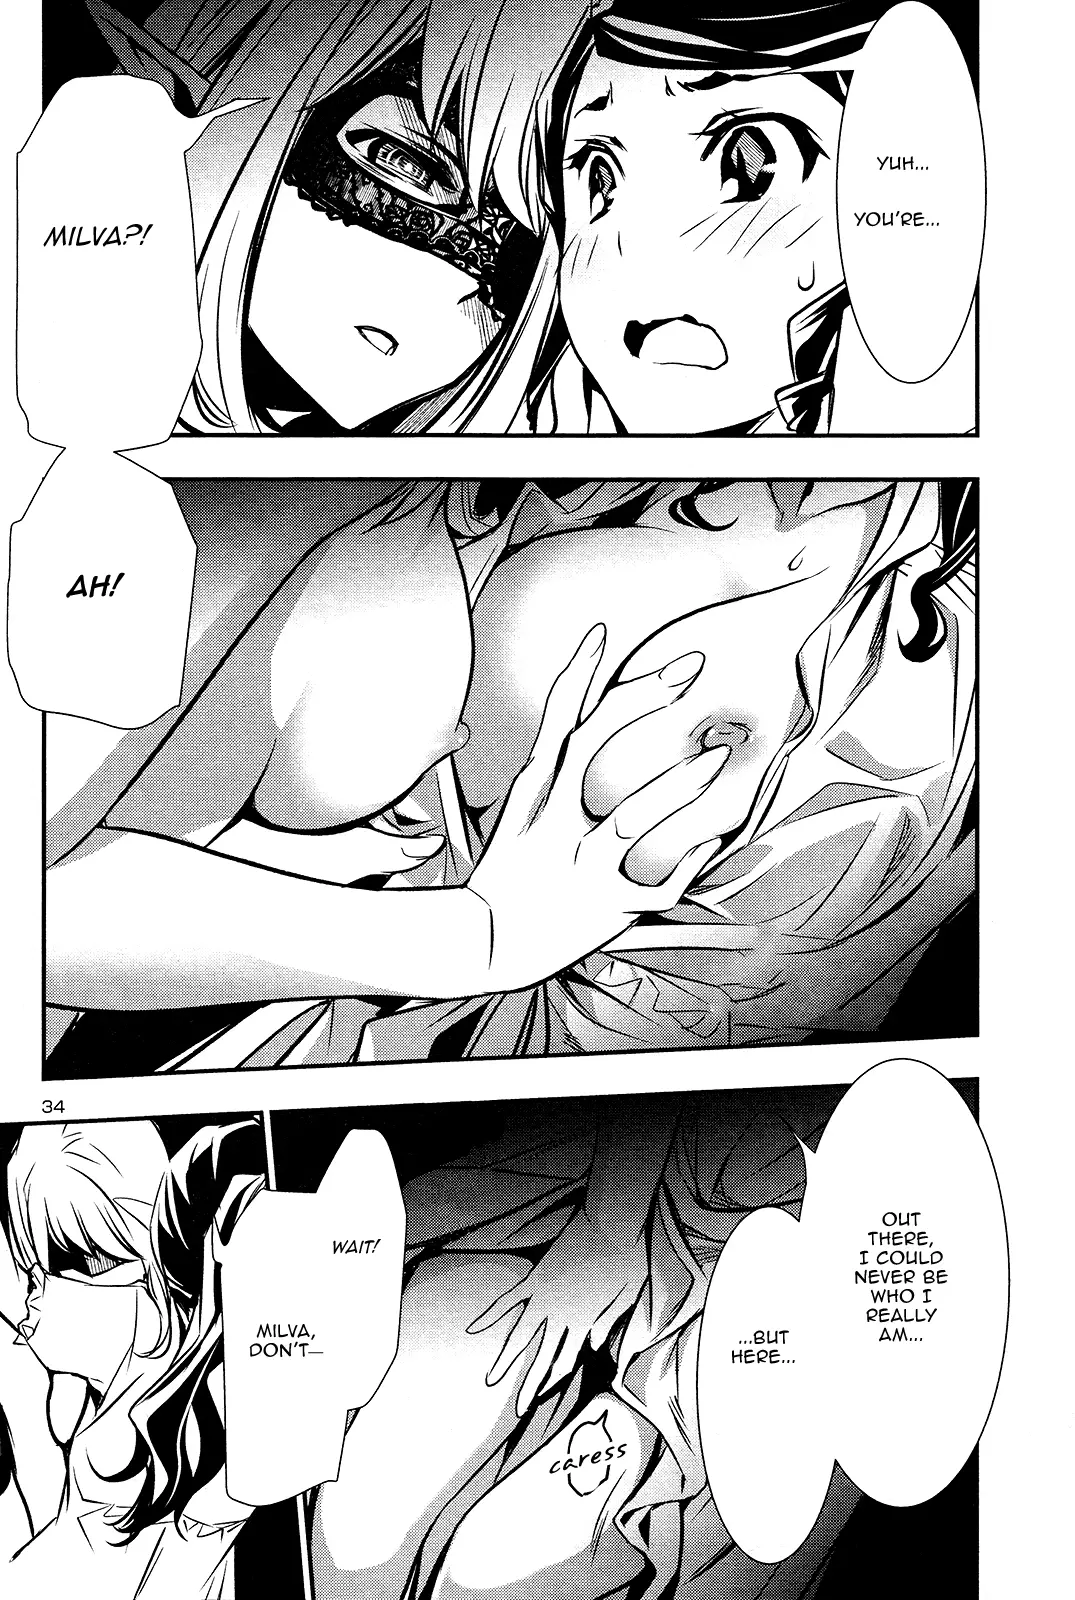 Shinju no Nectar - 35 page 34